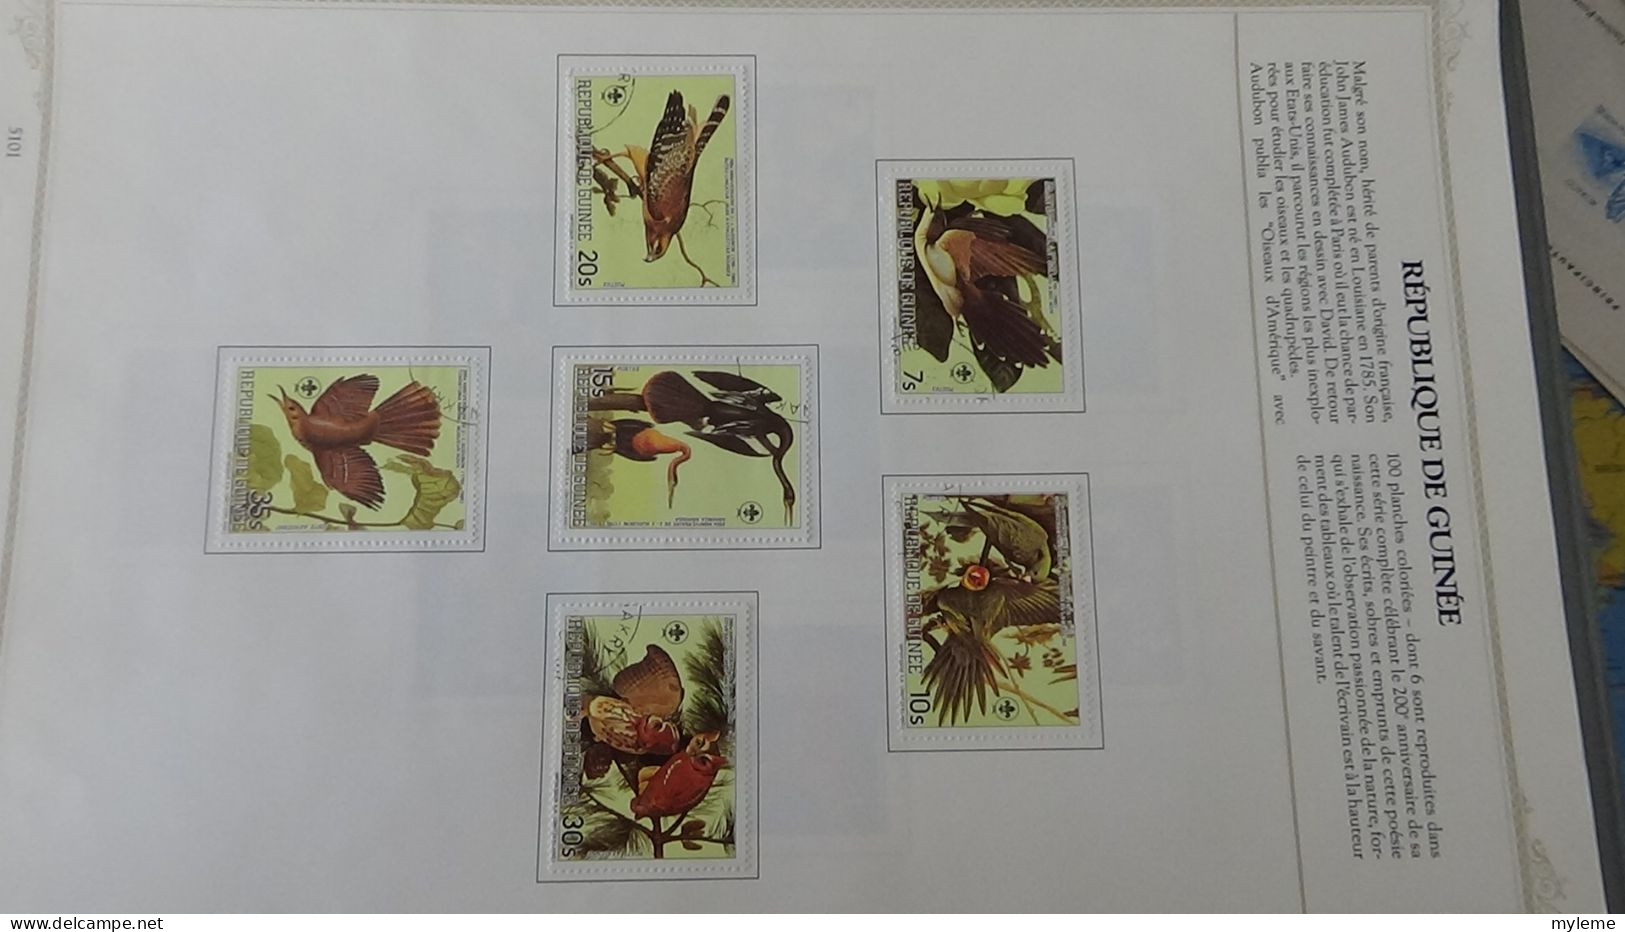 BF3 Classeur de timbres et blocs oblitérés d'Afrique. (toutes les photos n'ont pas été prises)  A saisir !!!.